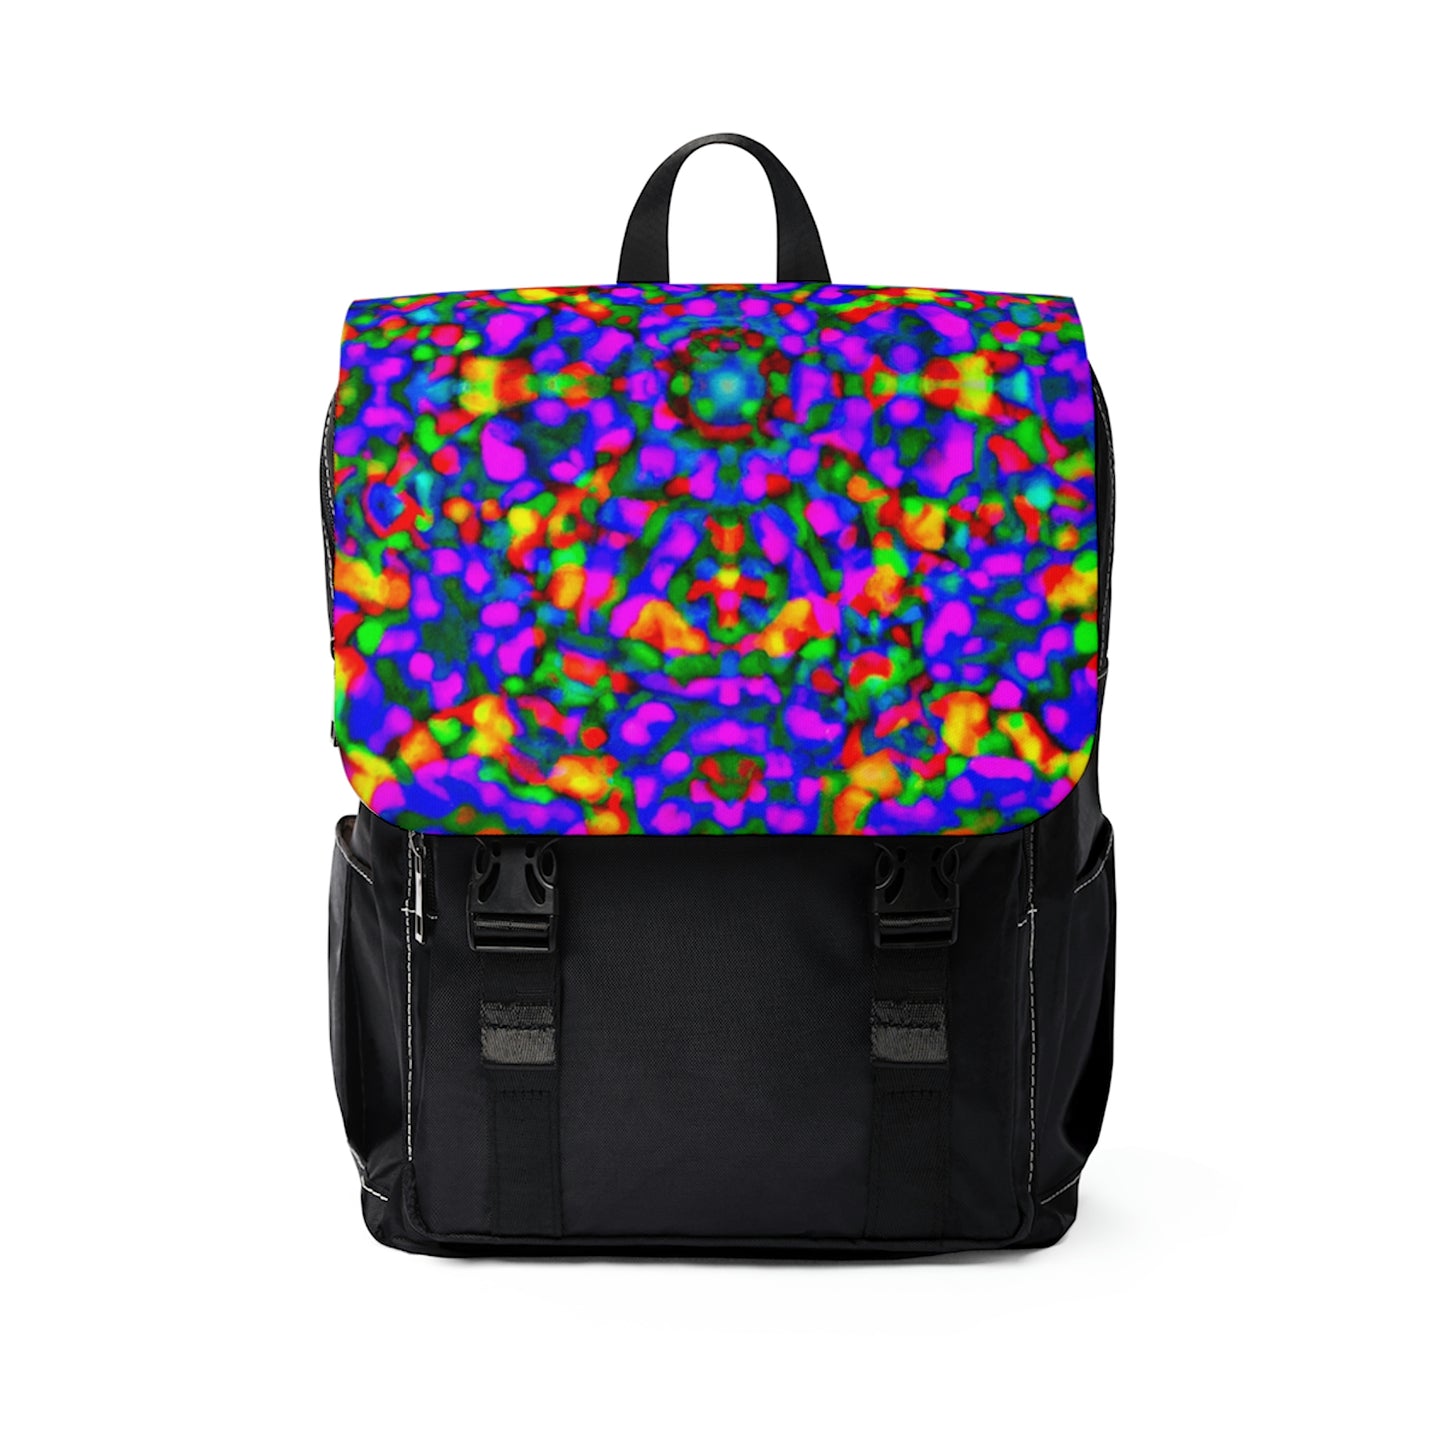 Durandelle - Psychedelic Shoulder Travel Backpack Bag